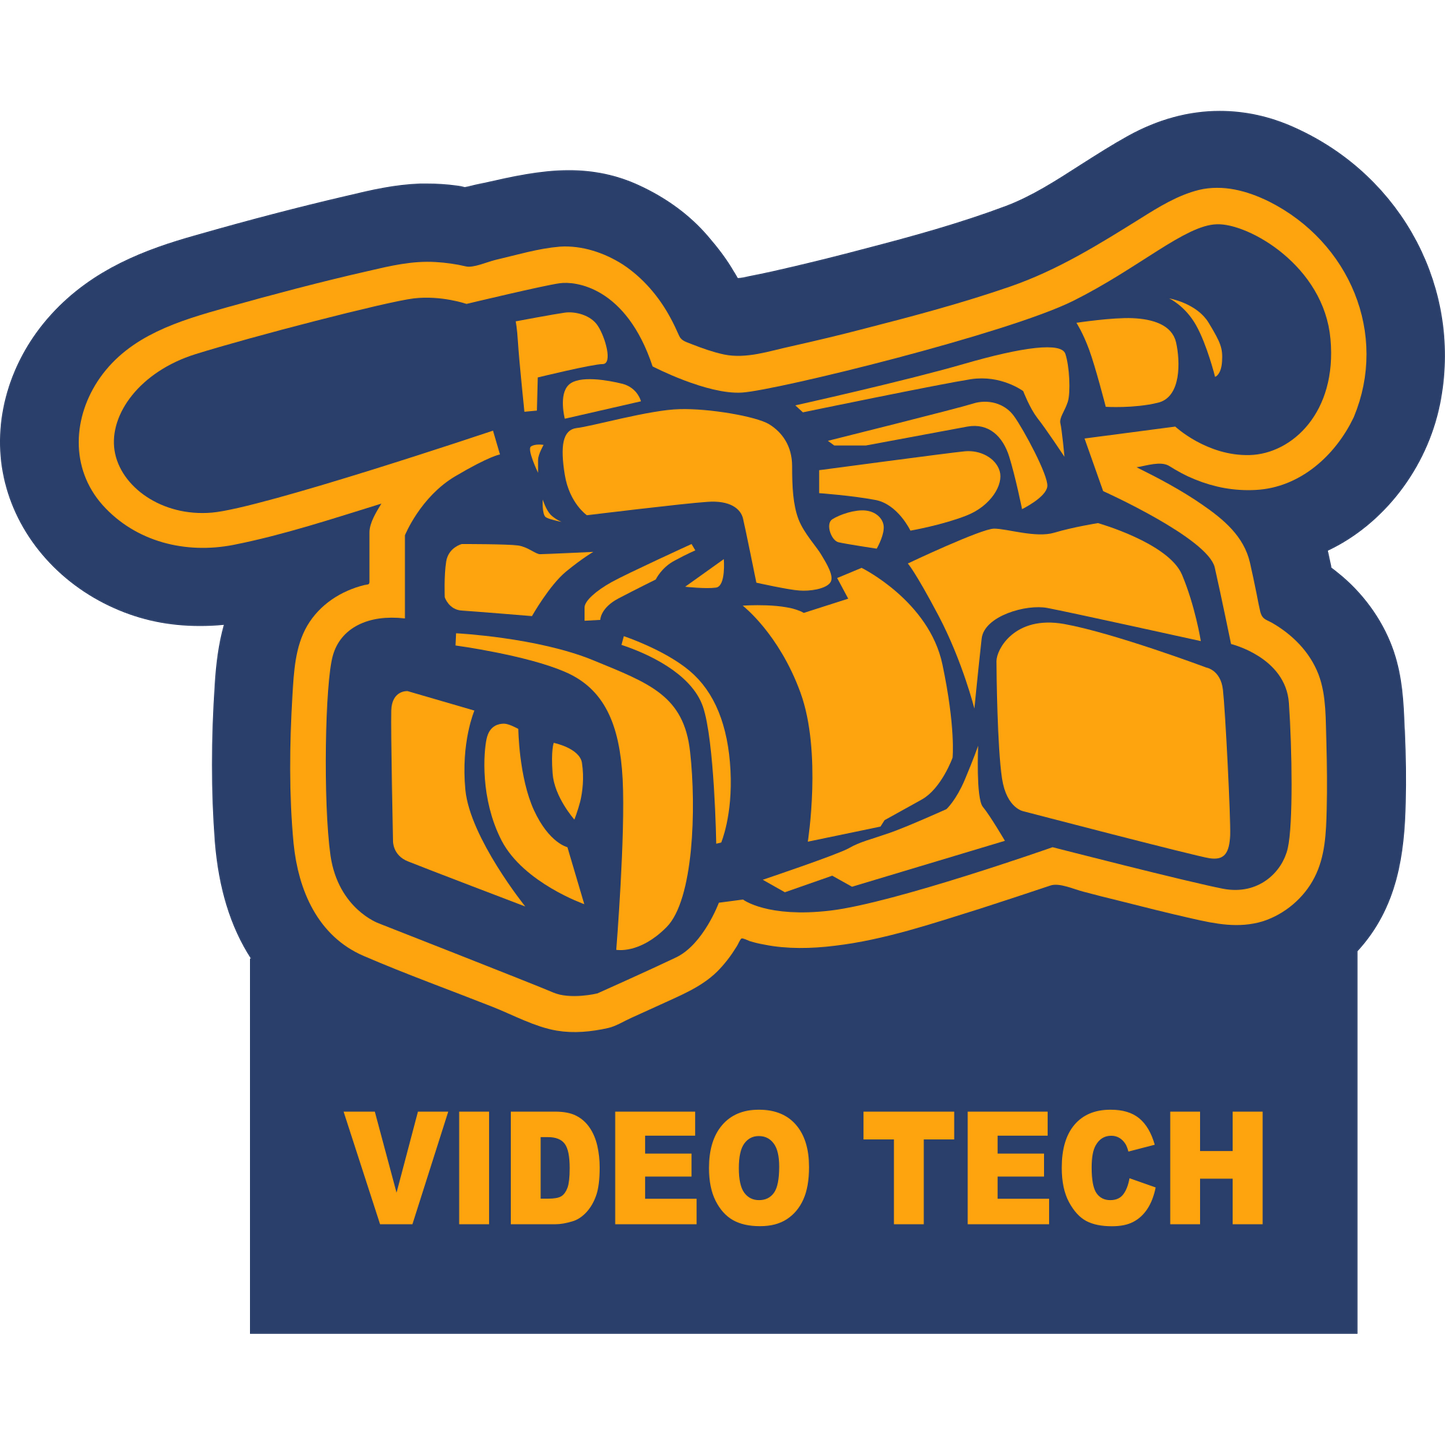 VDTCH - VideoTech Sleeve Patch